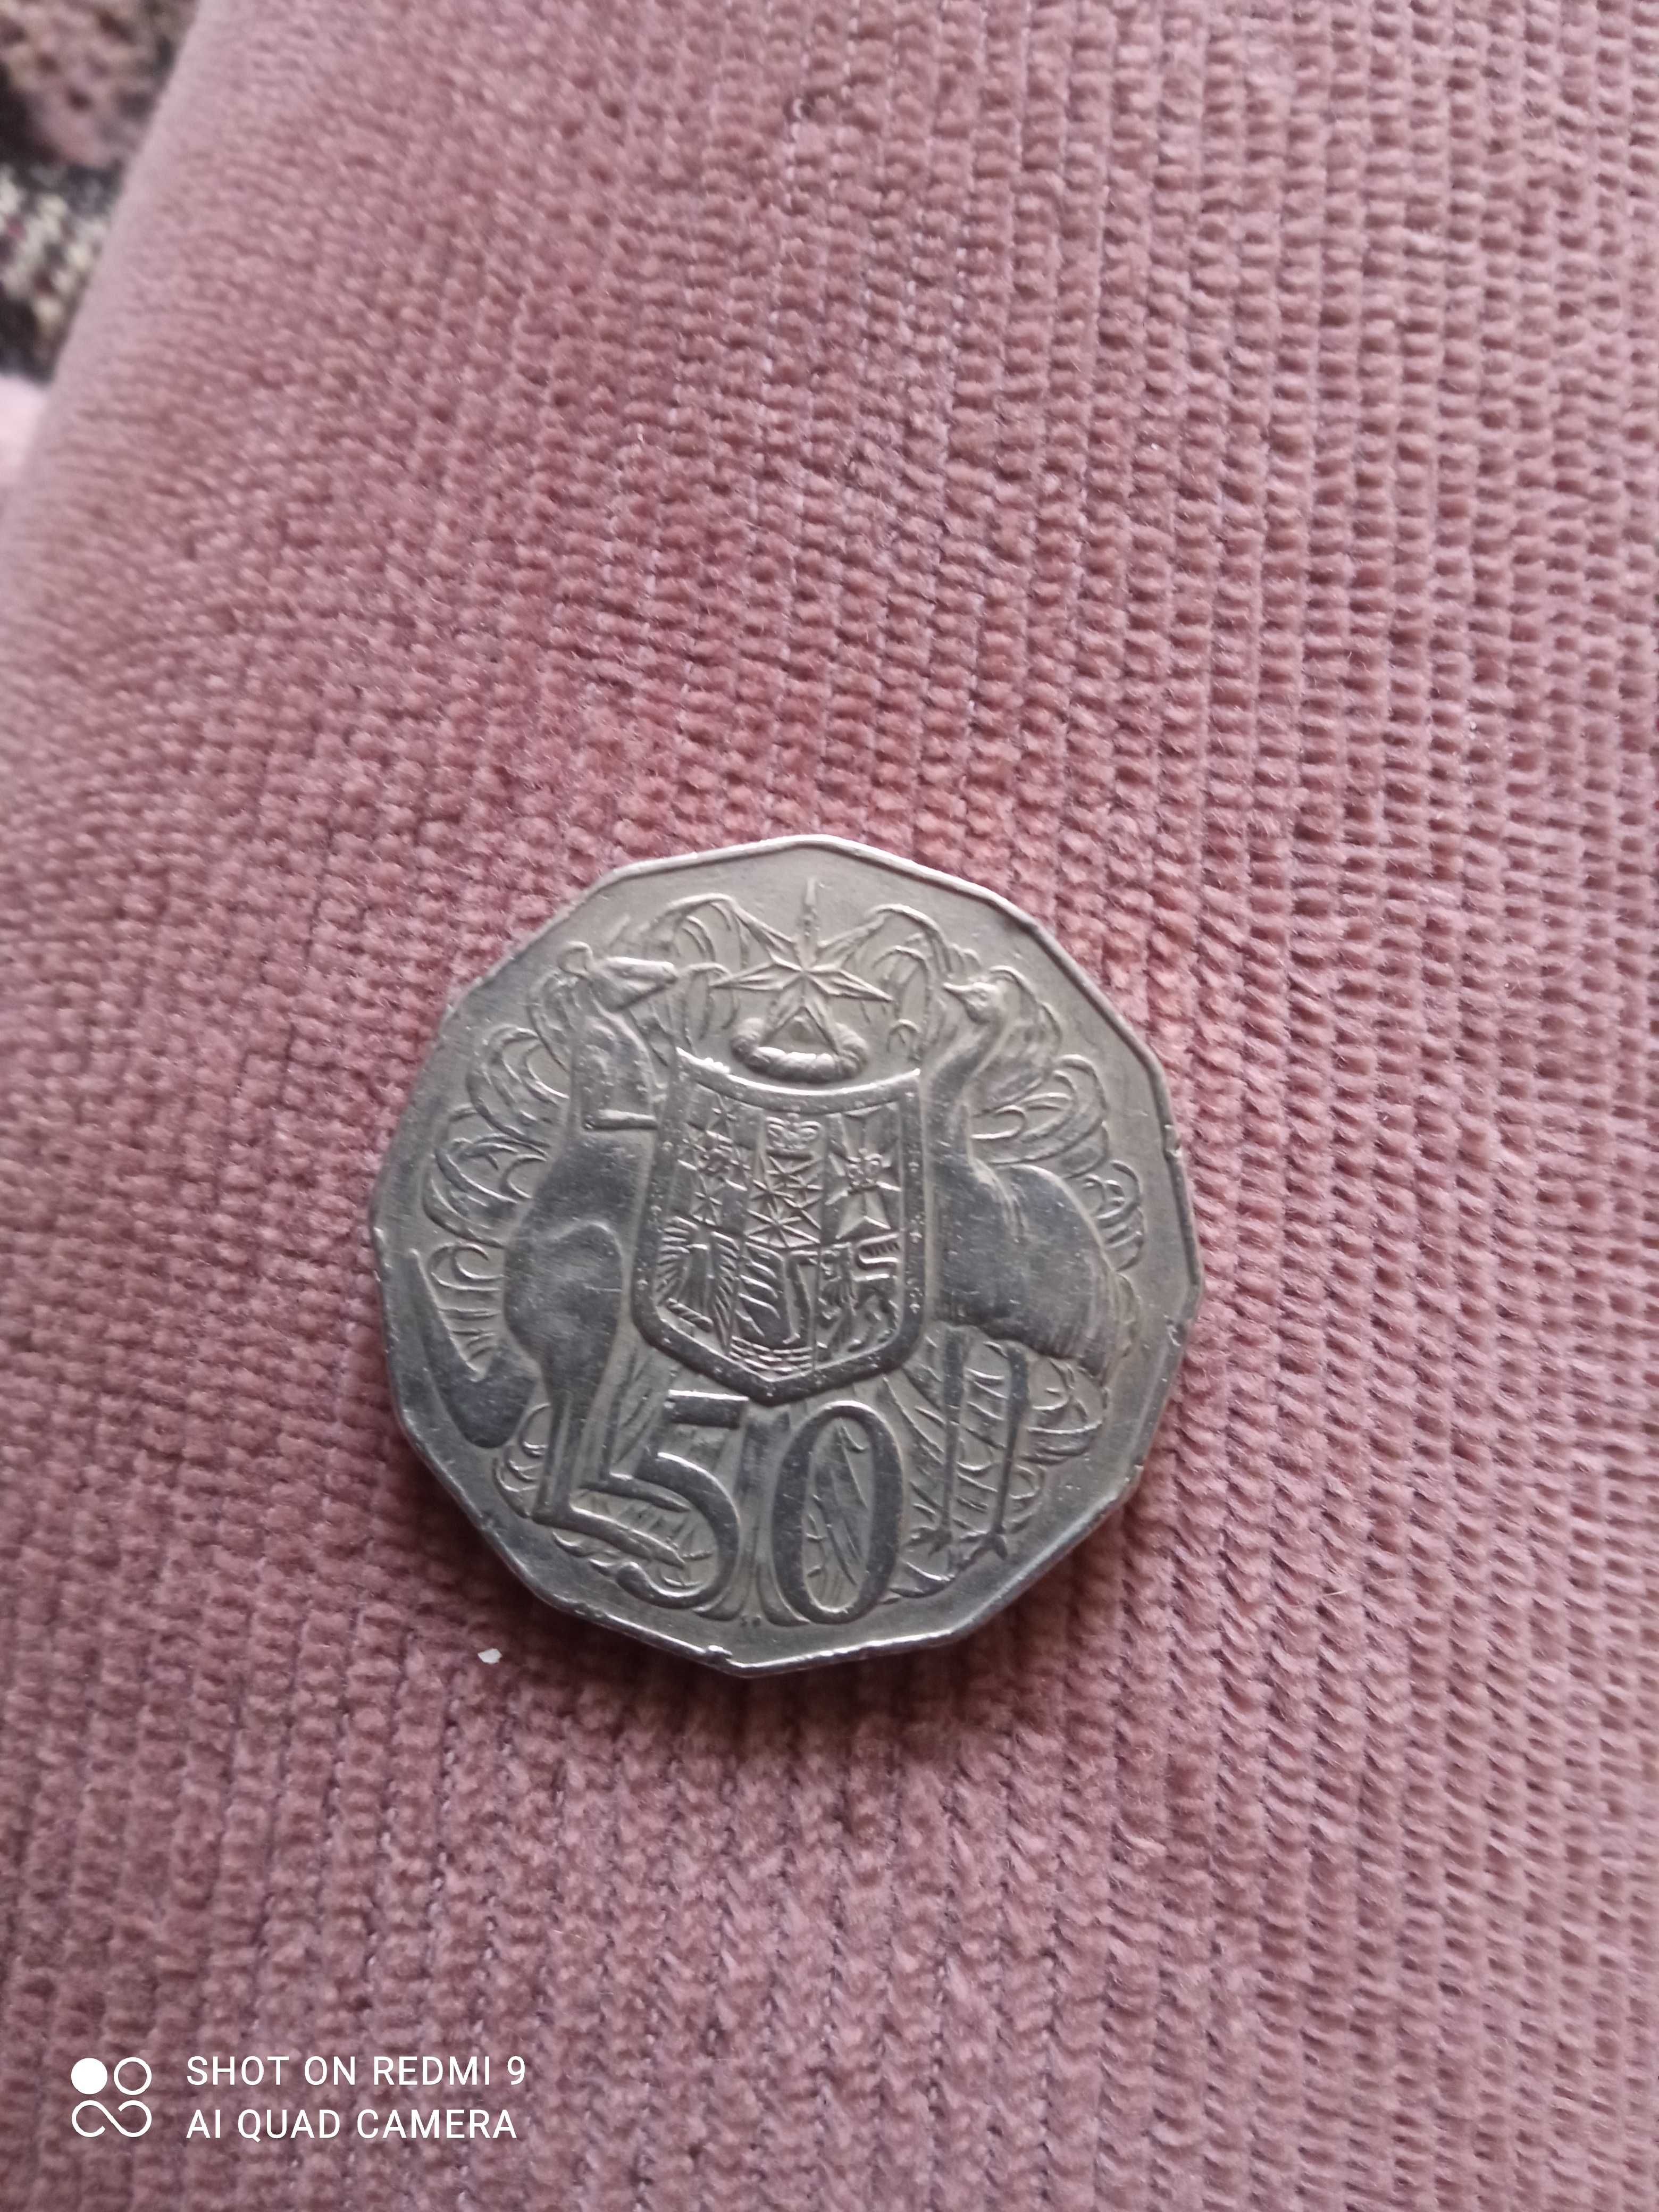 Продам Австрийскую монету Elizabetn ІІ Australia 1969